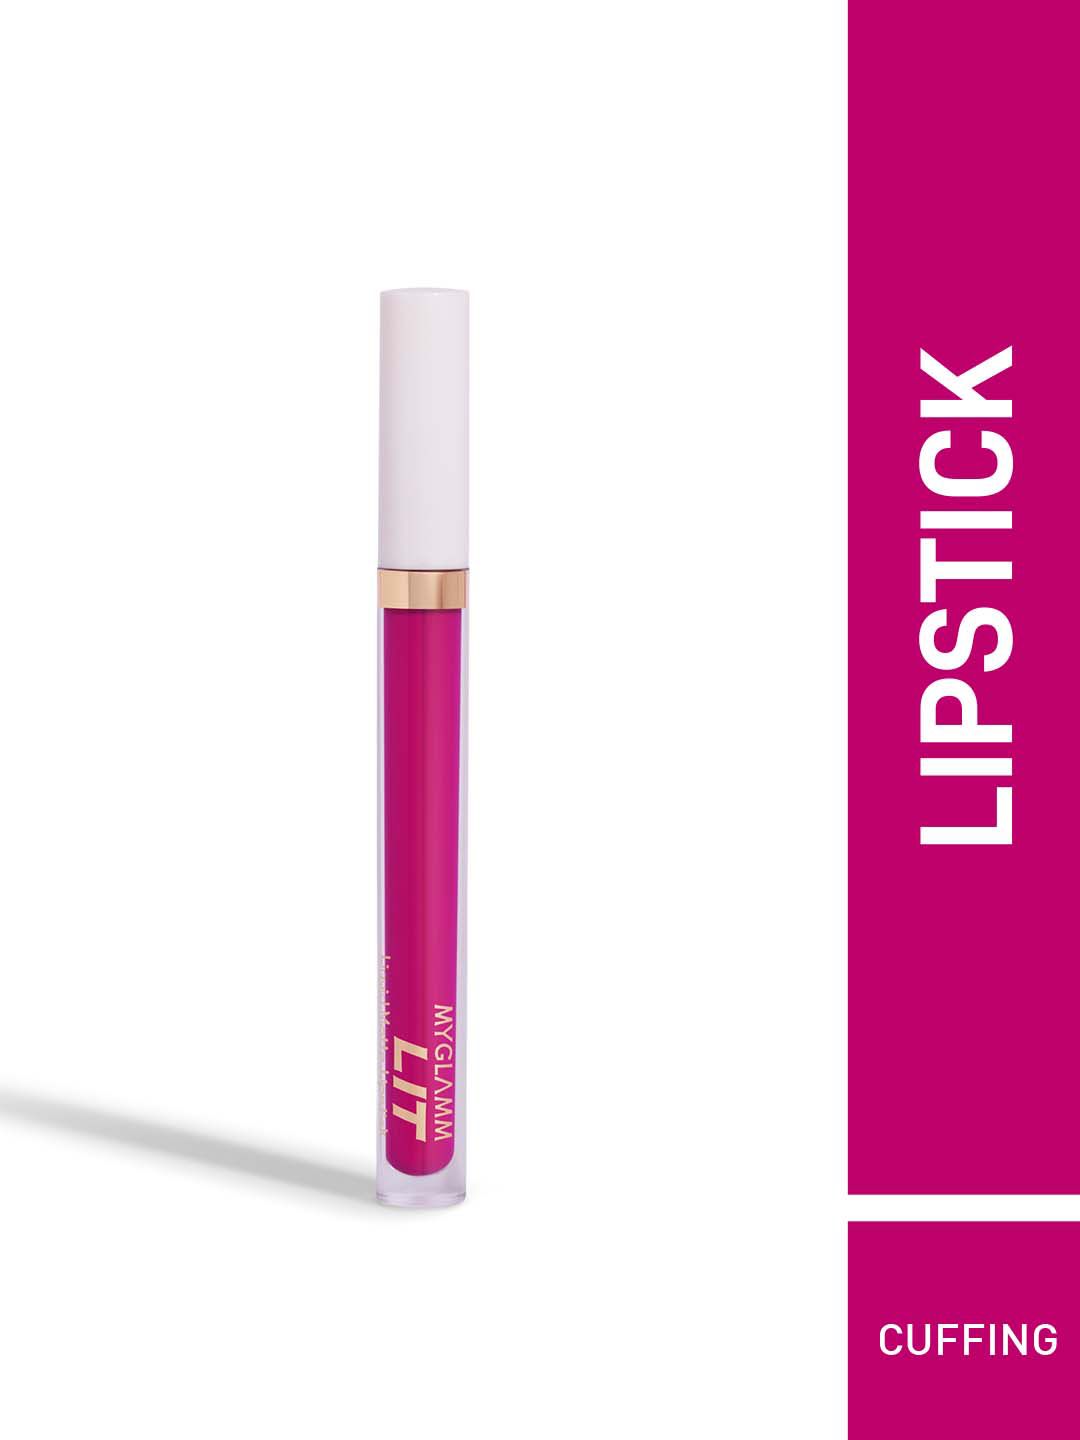 MyGlamm LIT Liquid Matte Lipstick 3 ml - Cuffing Price in India